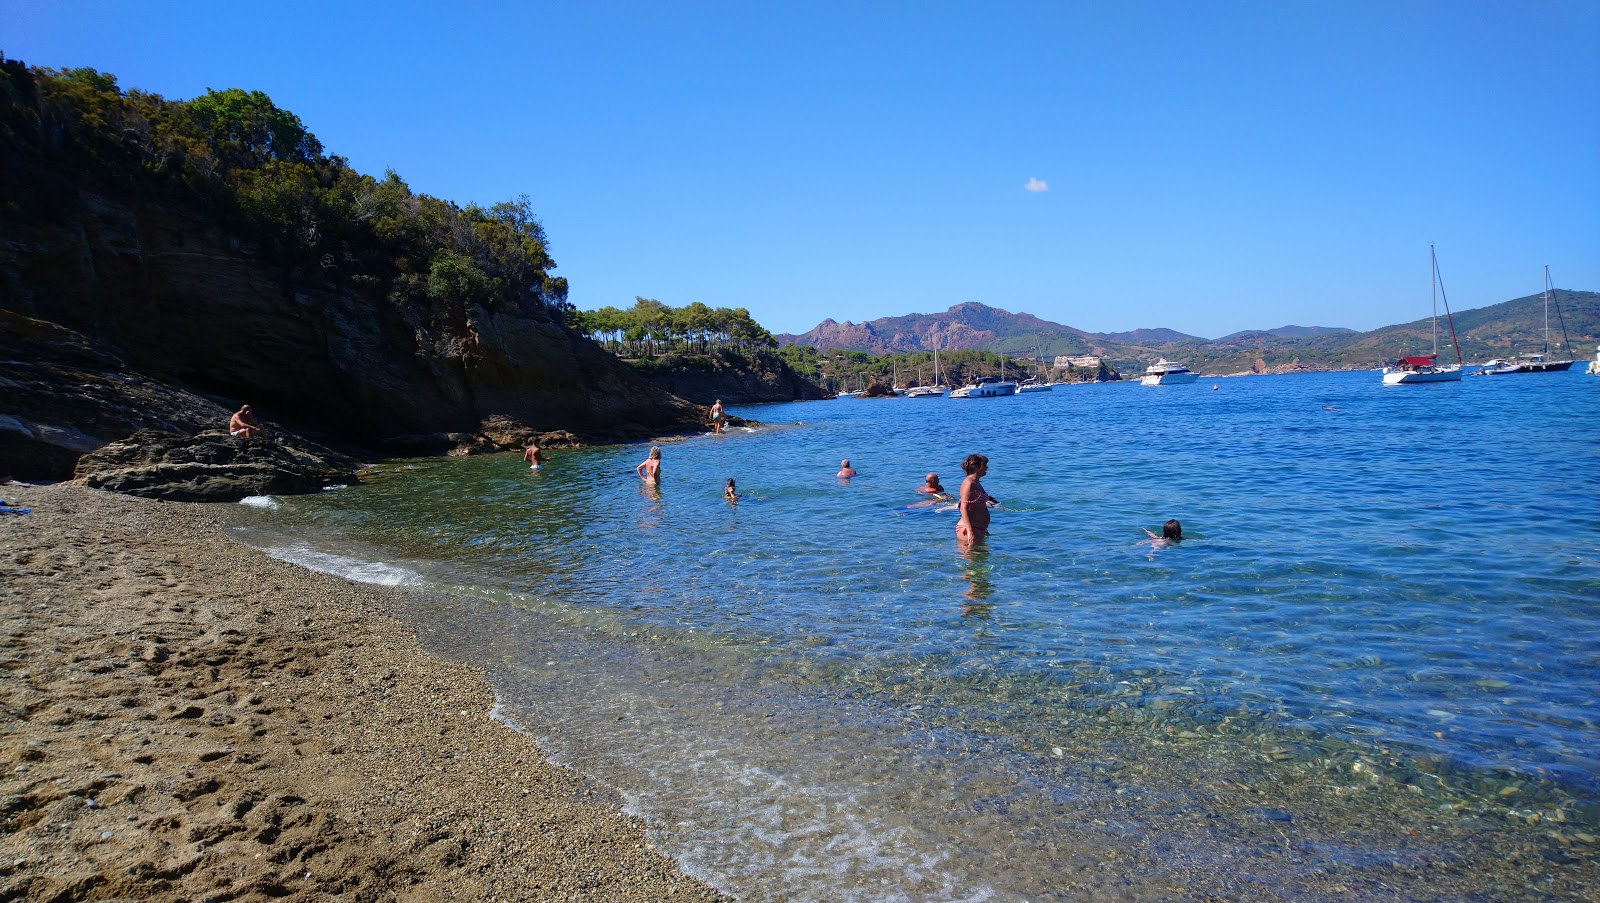 Fotografija Calanova beach z turkizna čista voda površino